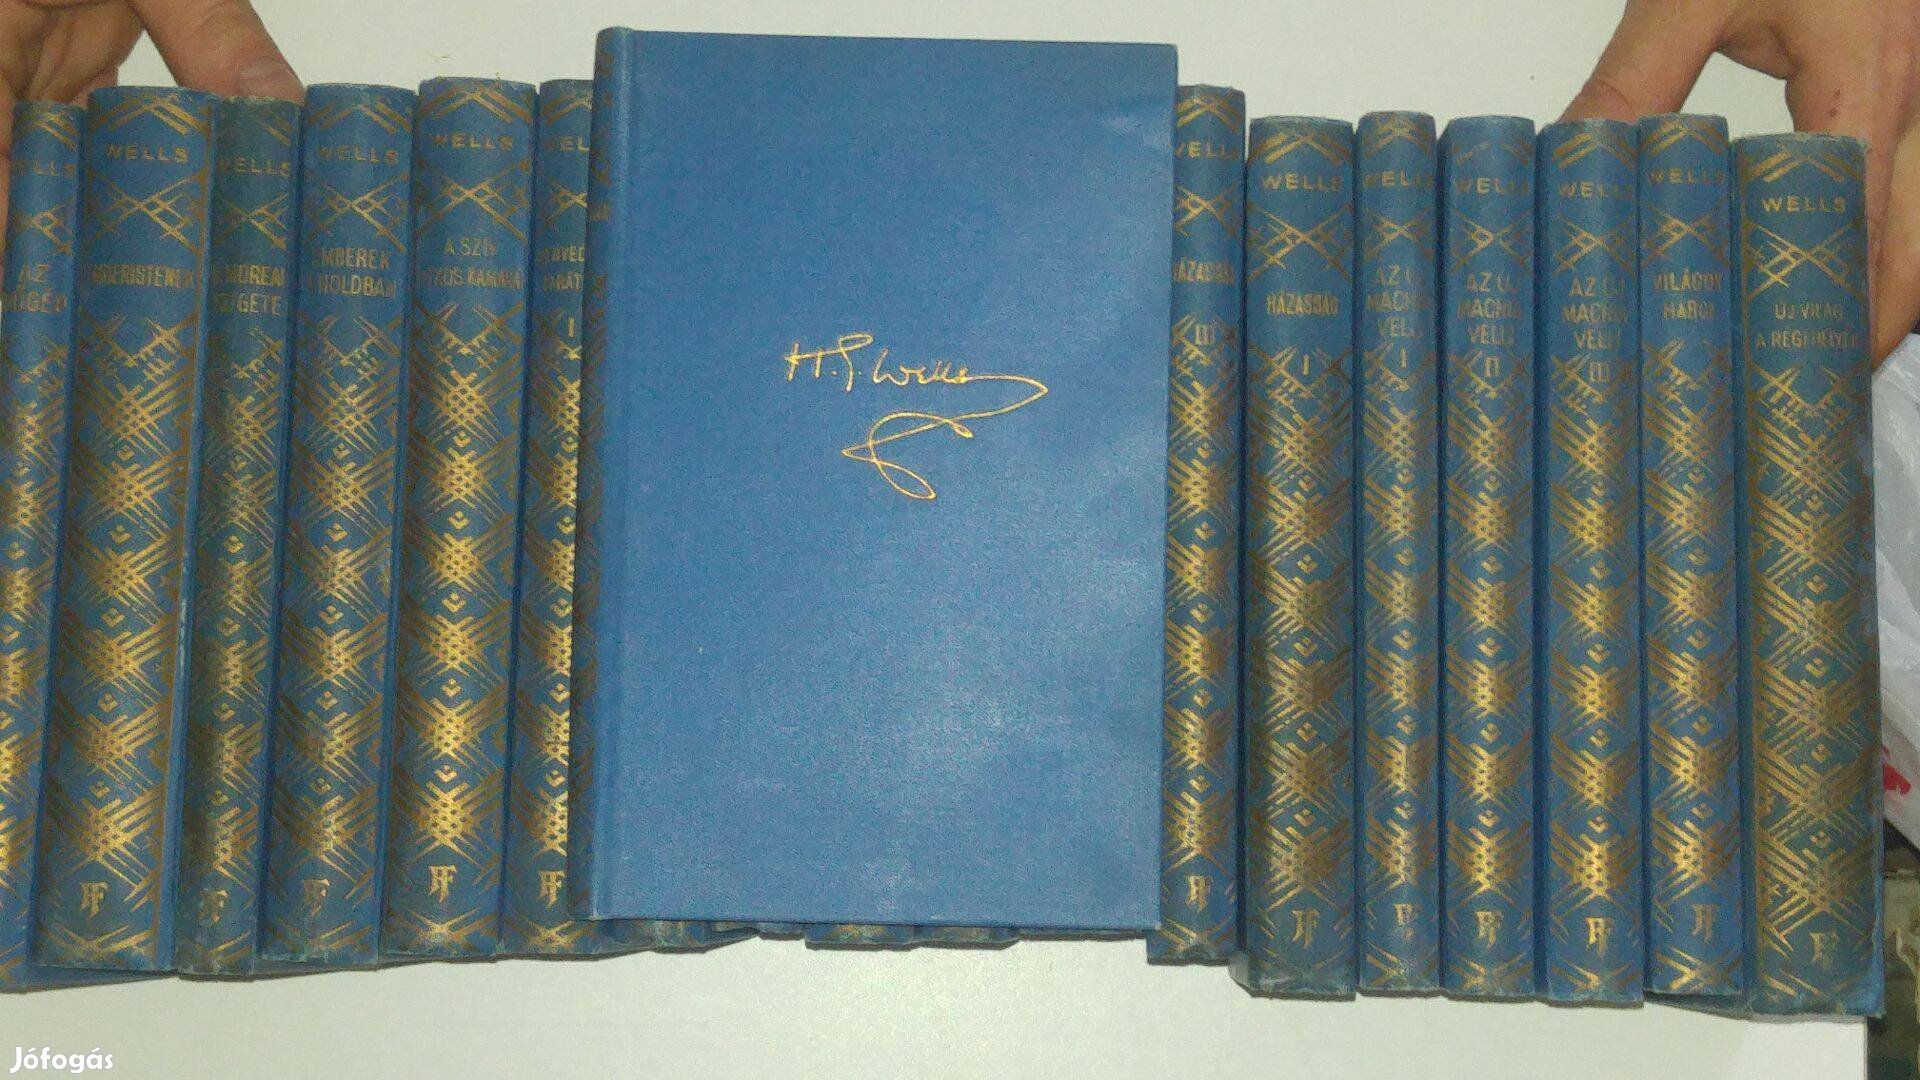 H. G. Wells művei sorozatból 19 kötet (nem teljes sorozat)